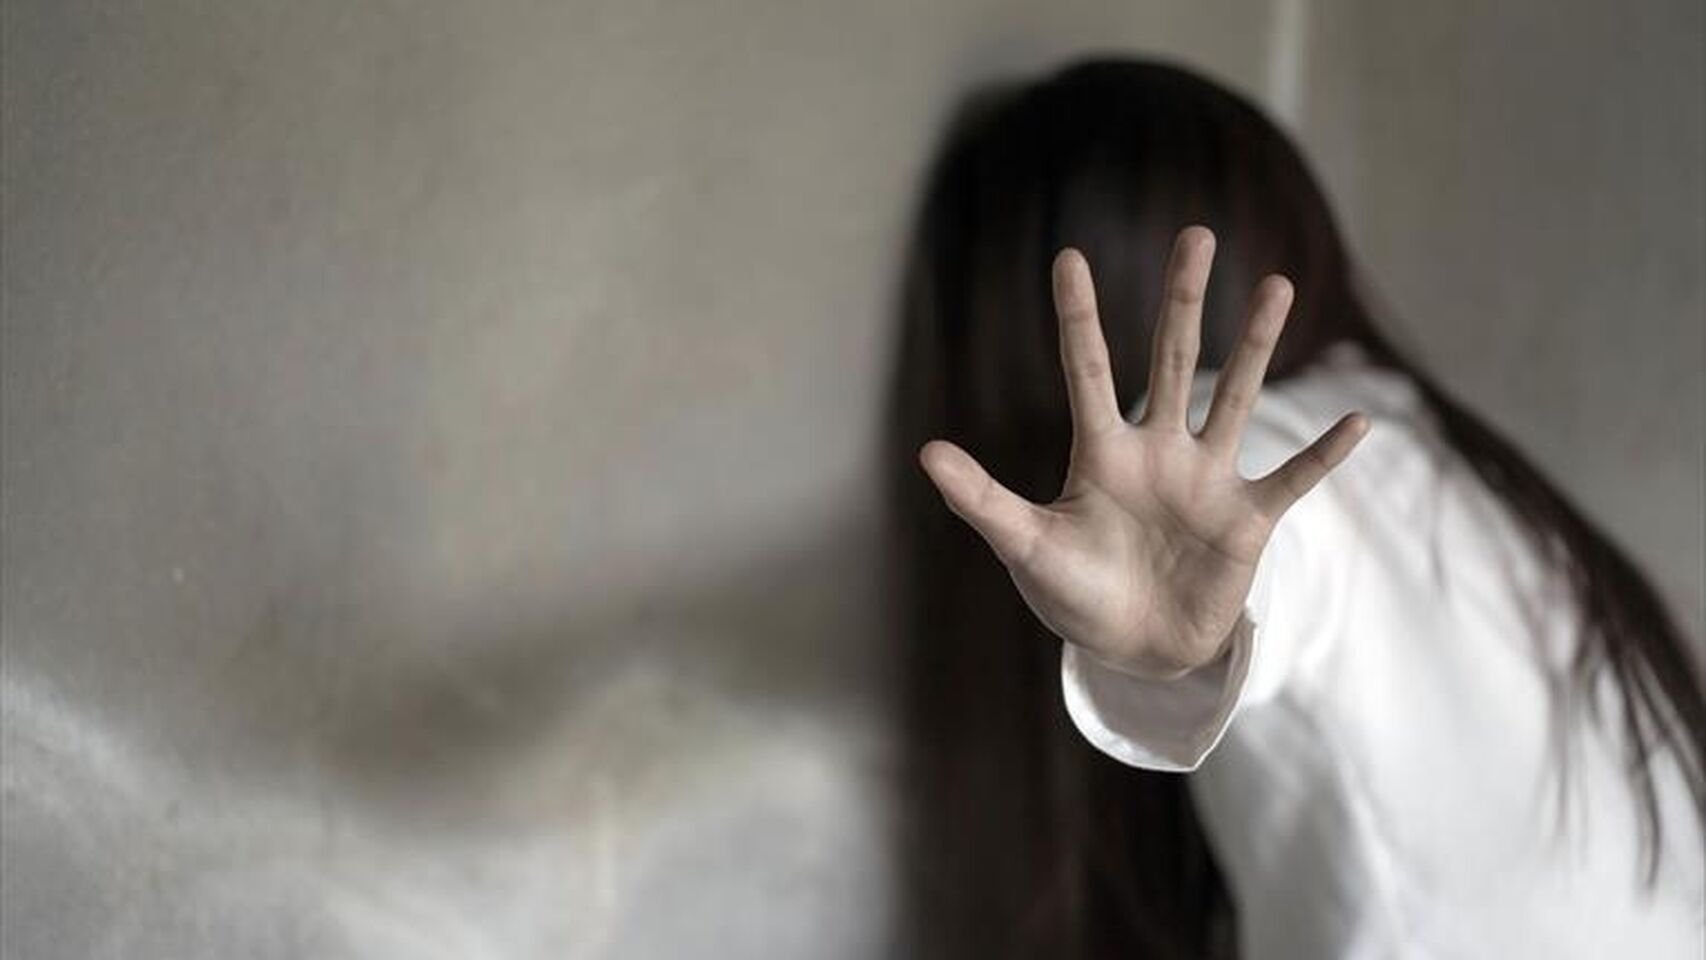 Un padre viola a su hija de 15 años porque "quería ser el primero": detenido en Calpe